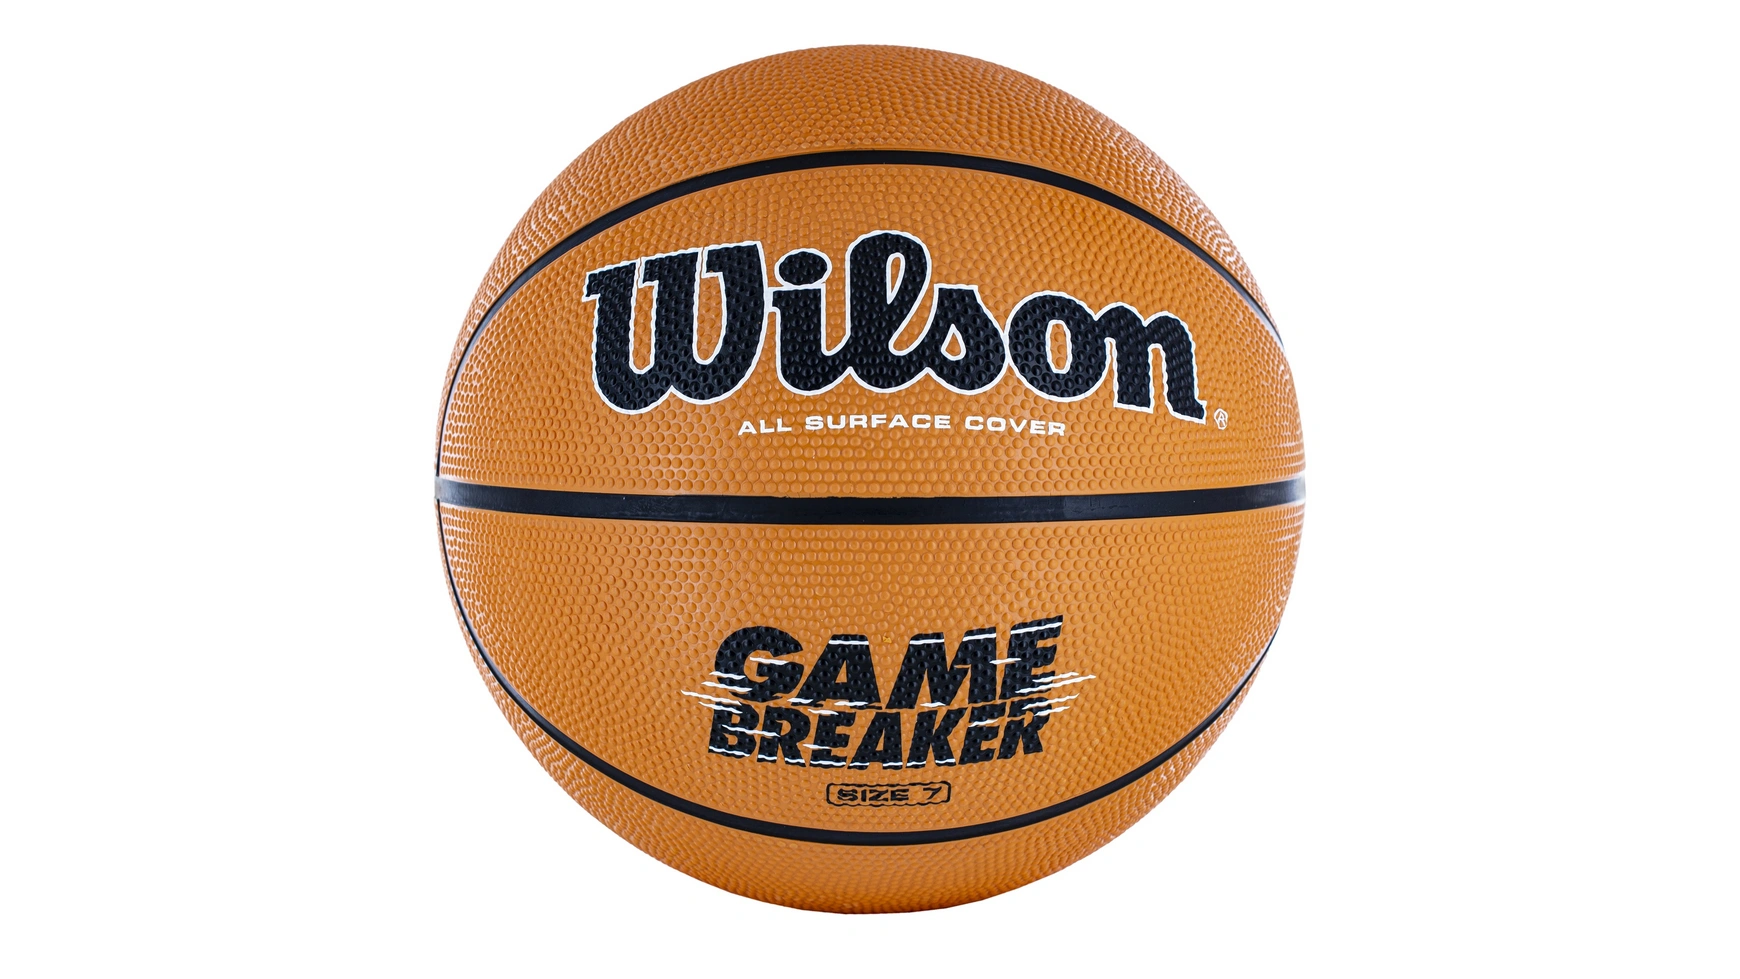 Wilson Basketball Gamebreaker, размер 7 deluxe basketball perimeter basketball net